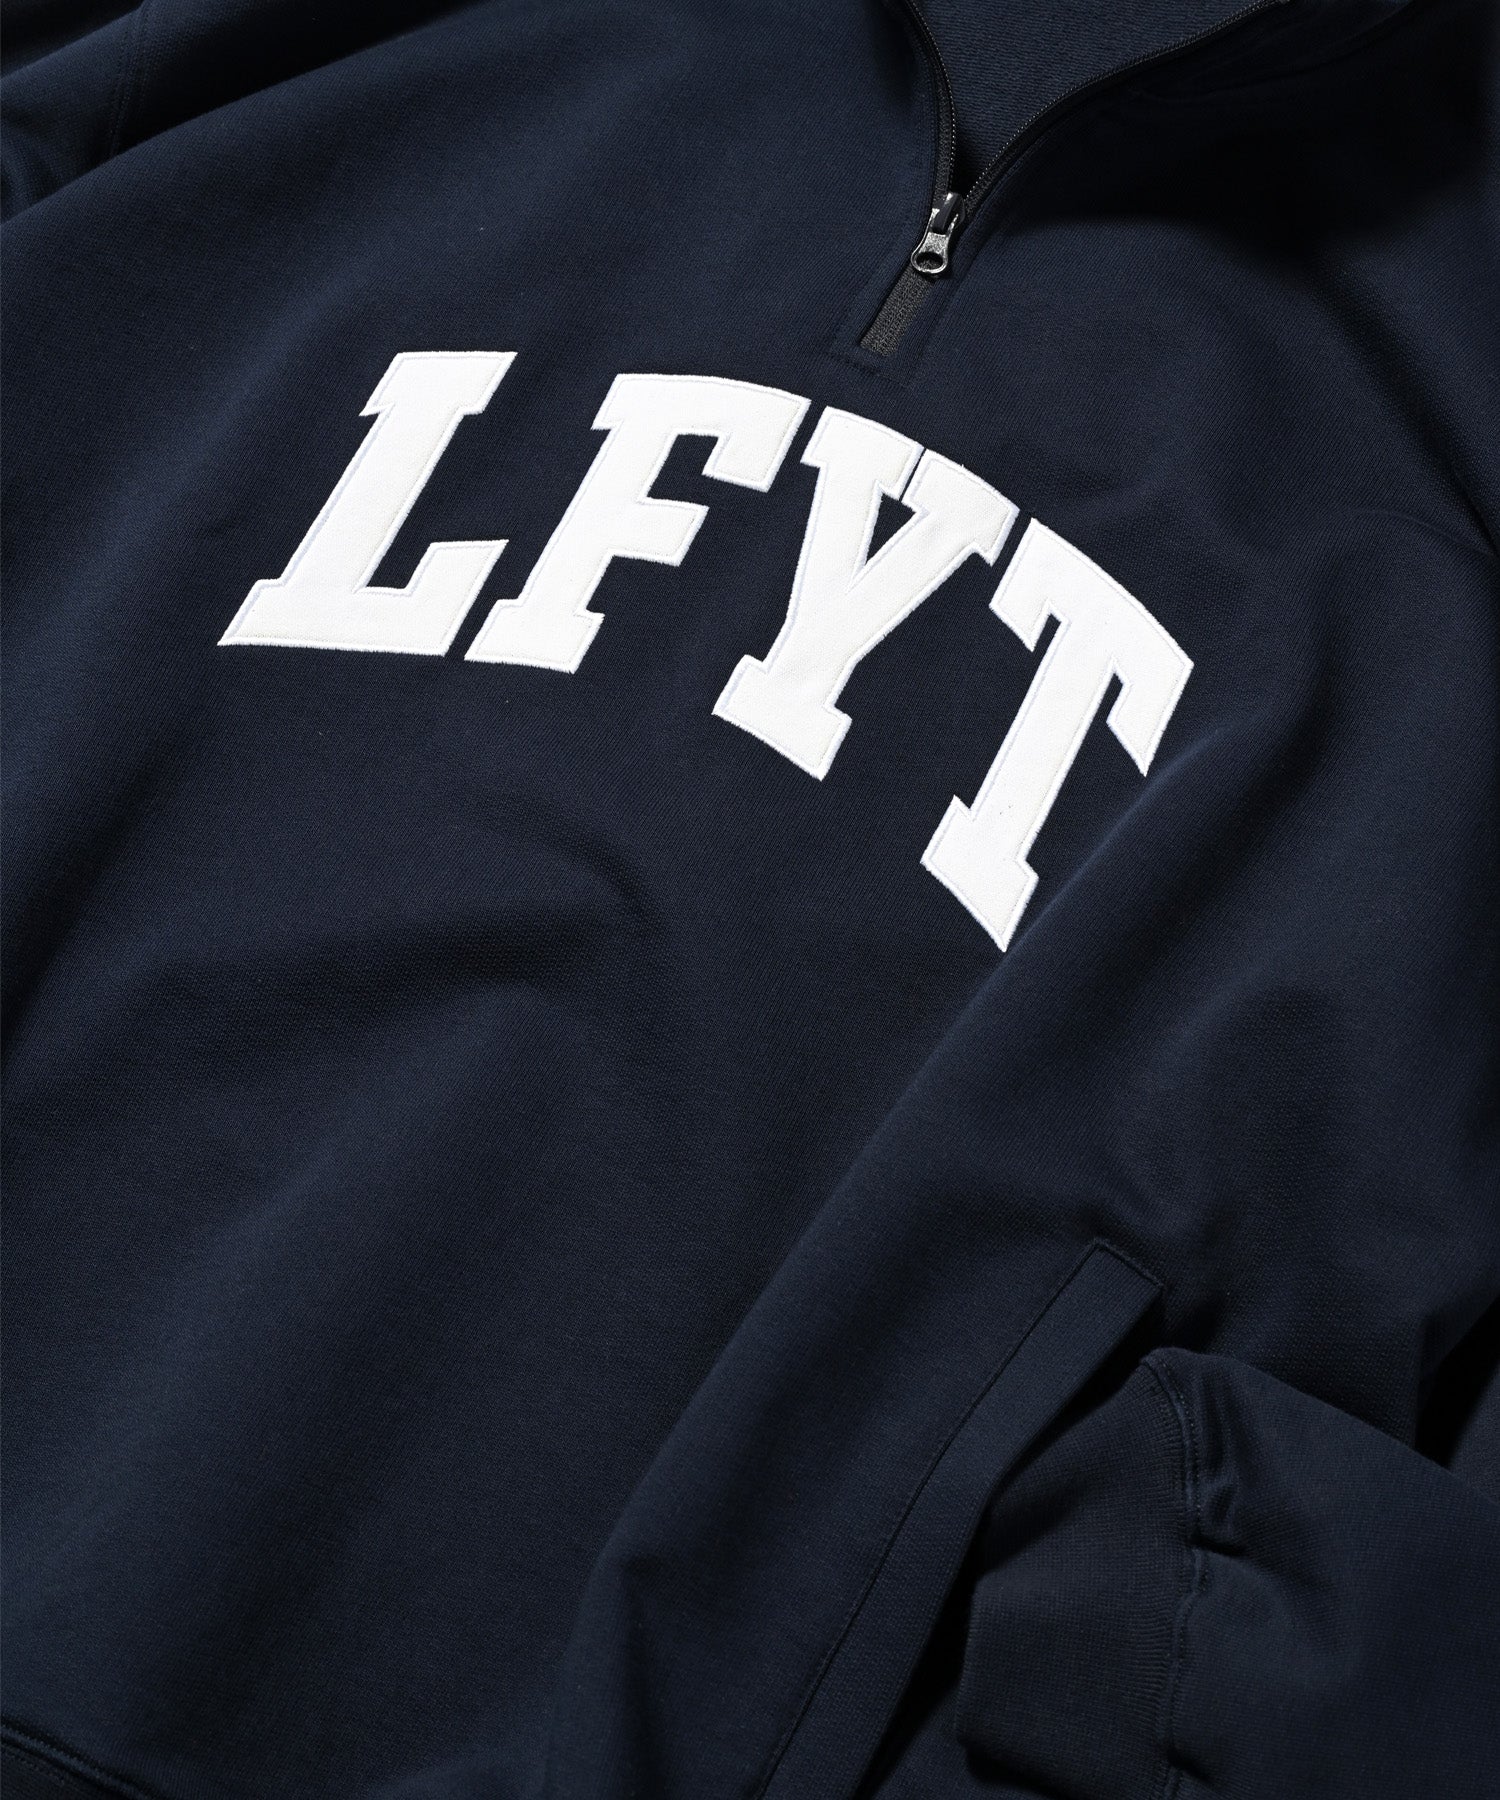 LFYT - LFYT 拱形標誌半拉鍊衛衣 LA230701